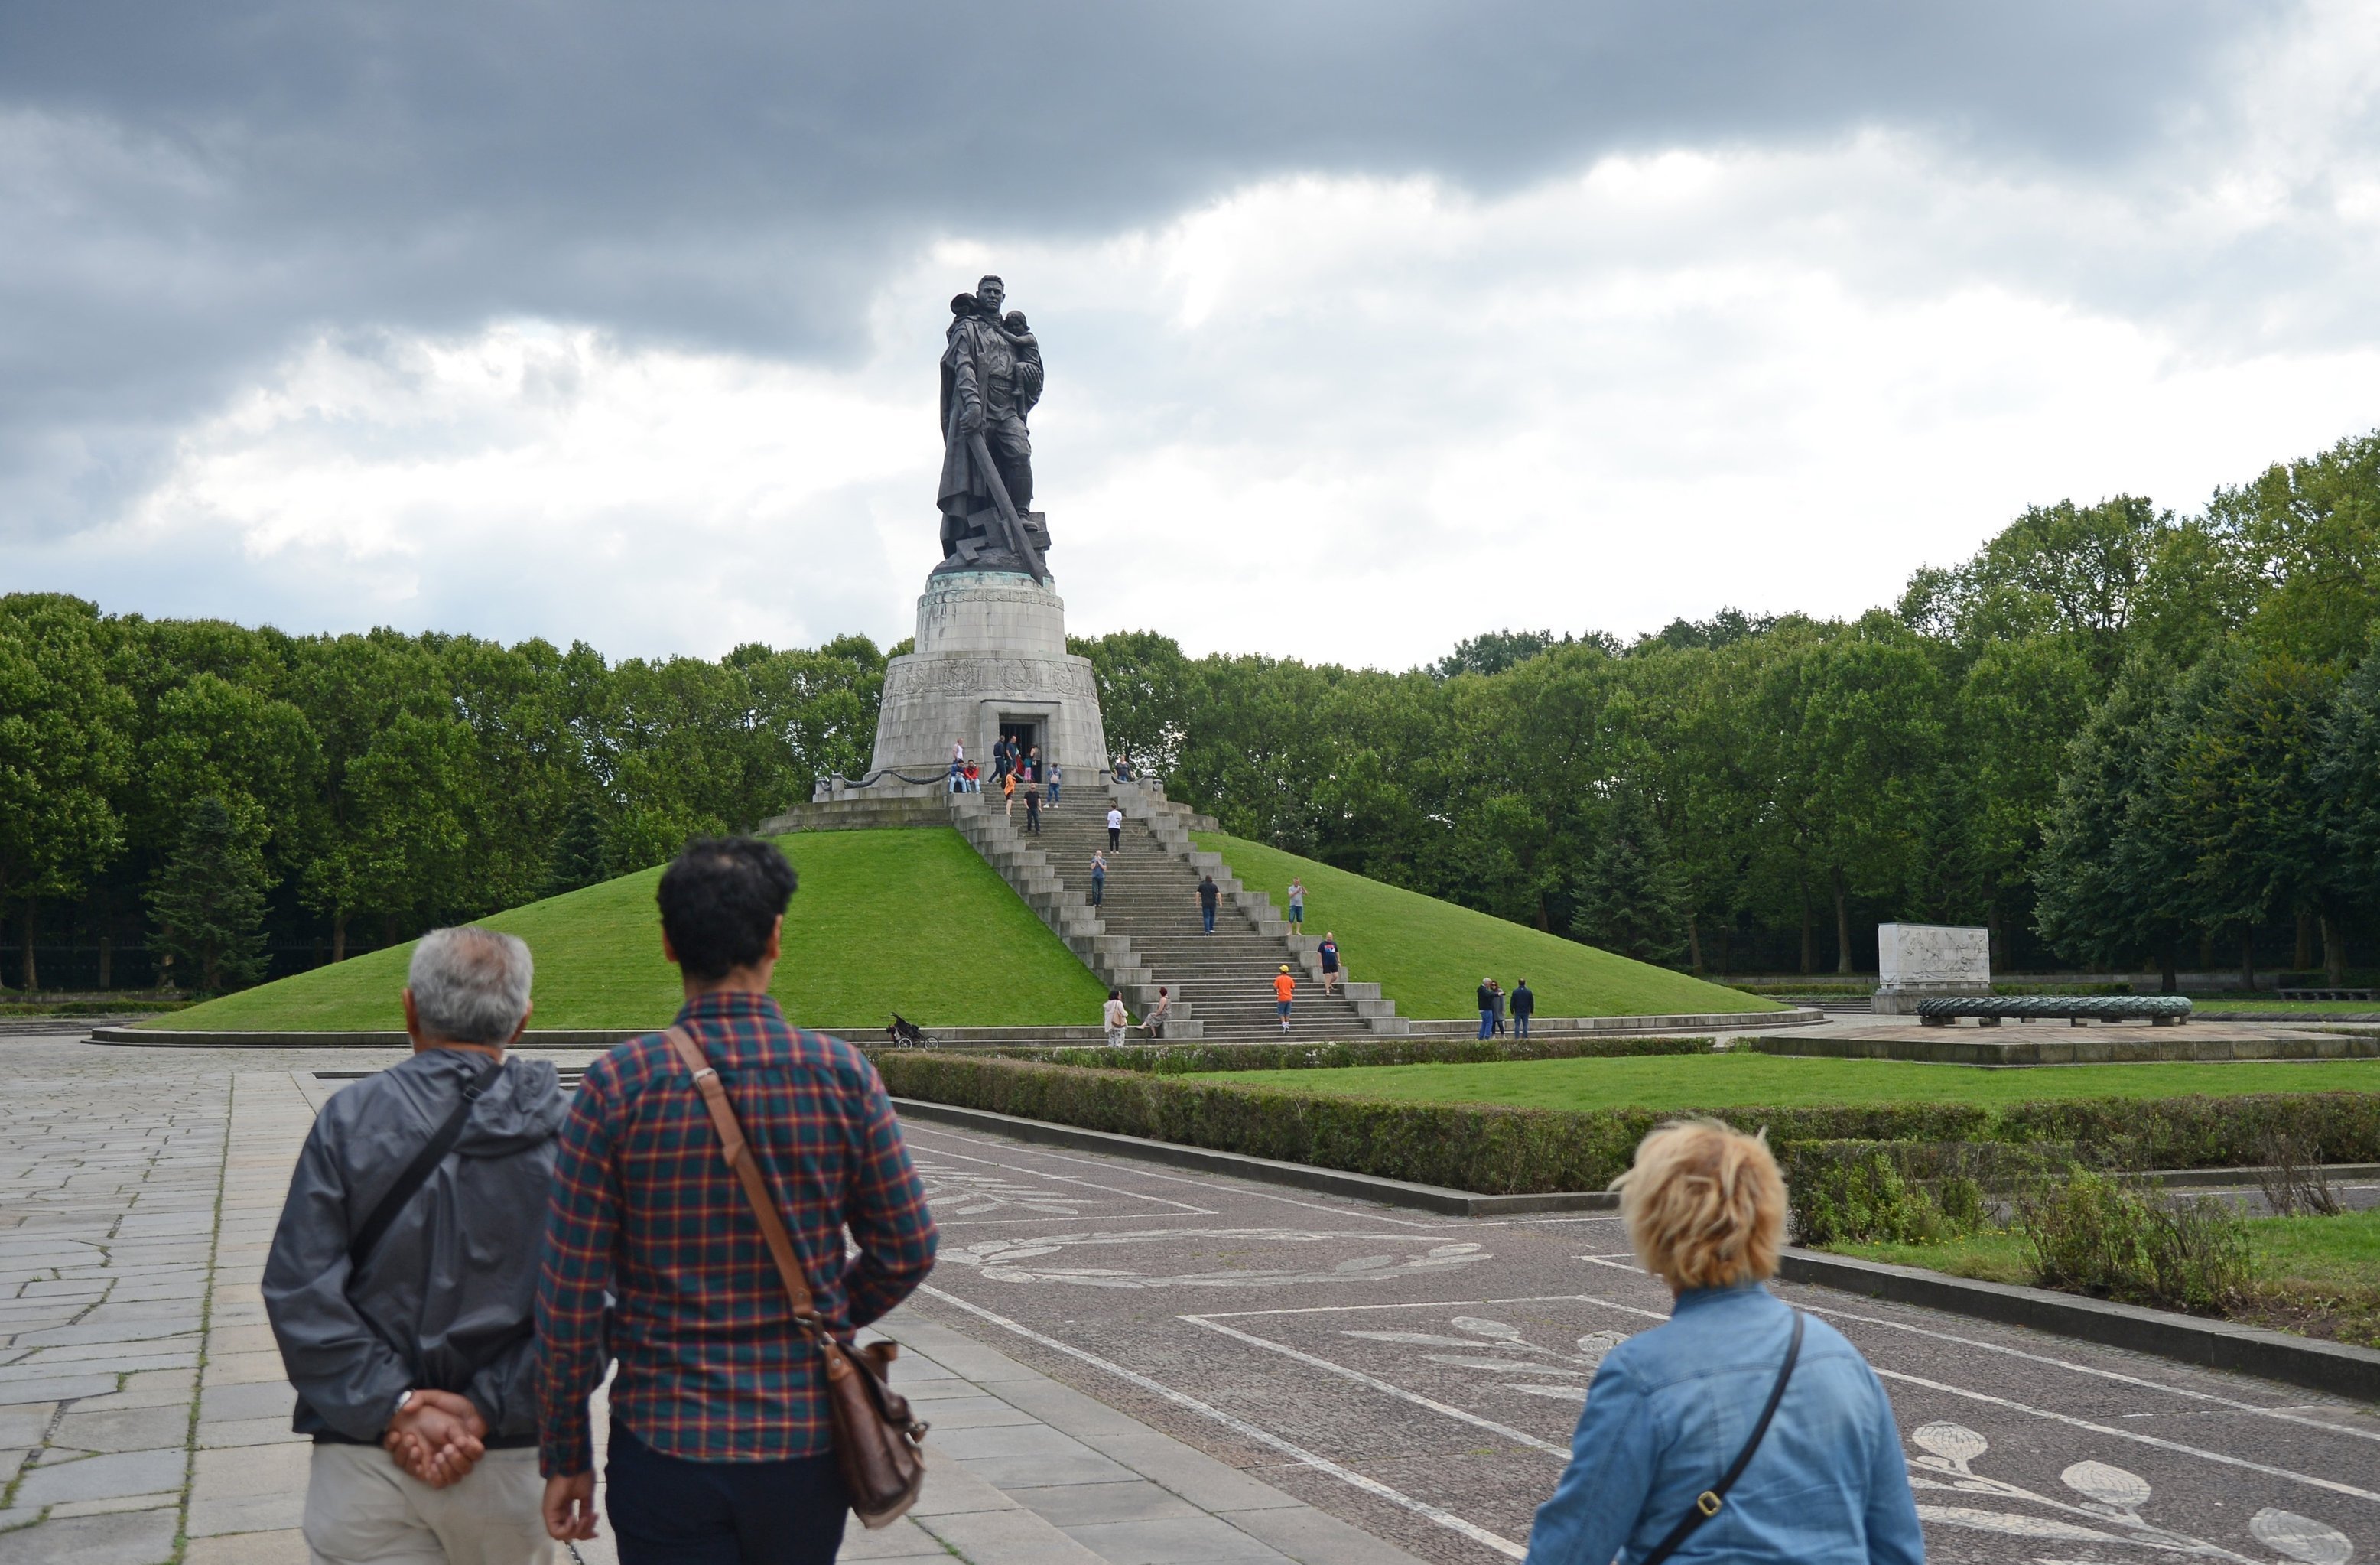 Монумент "Воин-освободитель" в Трептов-парке в Берлине.